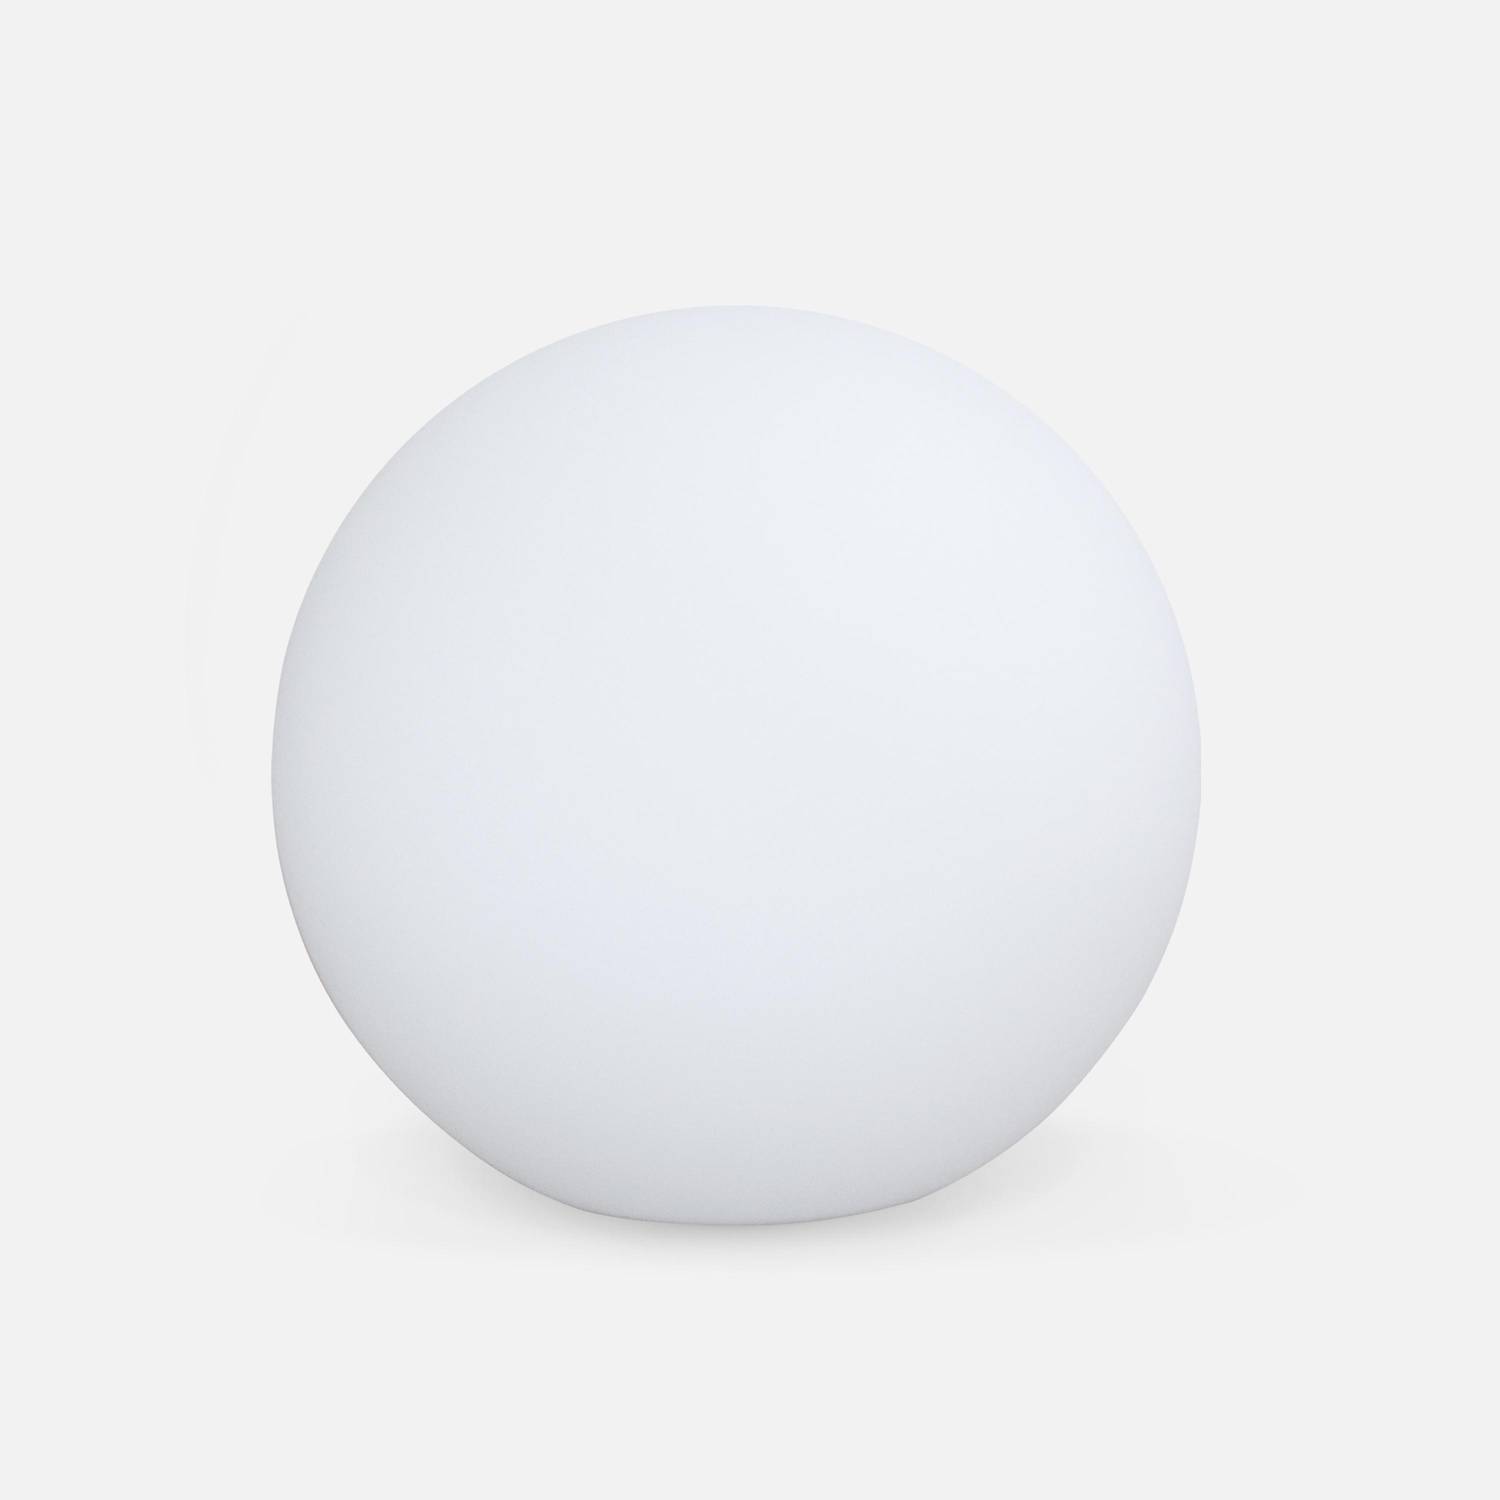 LED Bollamp 40cm – Decoratieve lichtbol, Ø40cm, warm wit, afstandsbediening Photo2